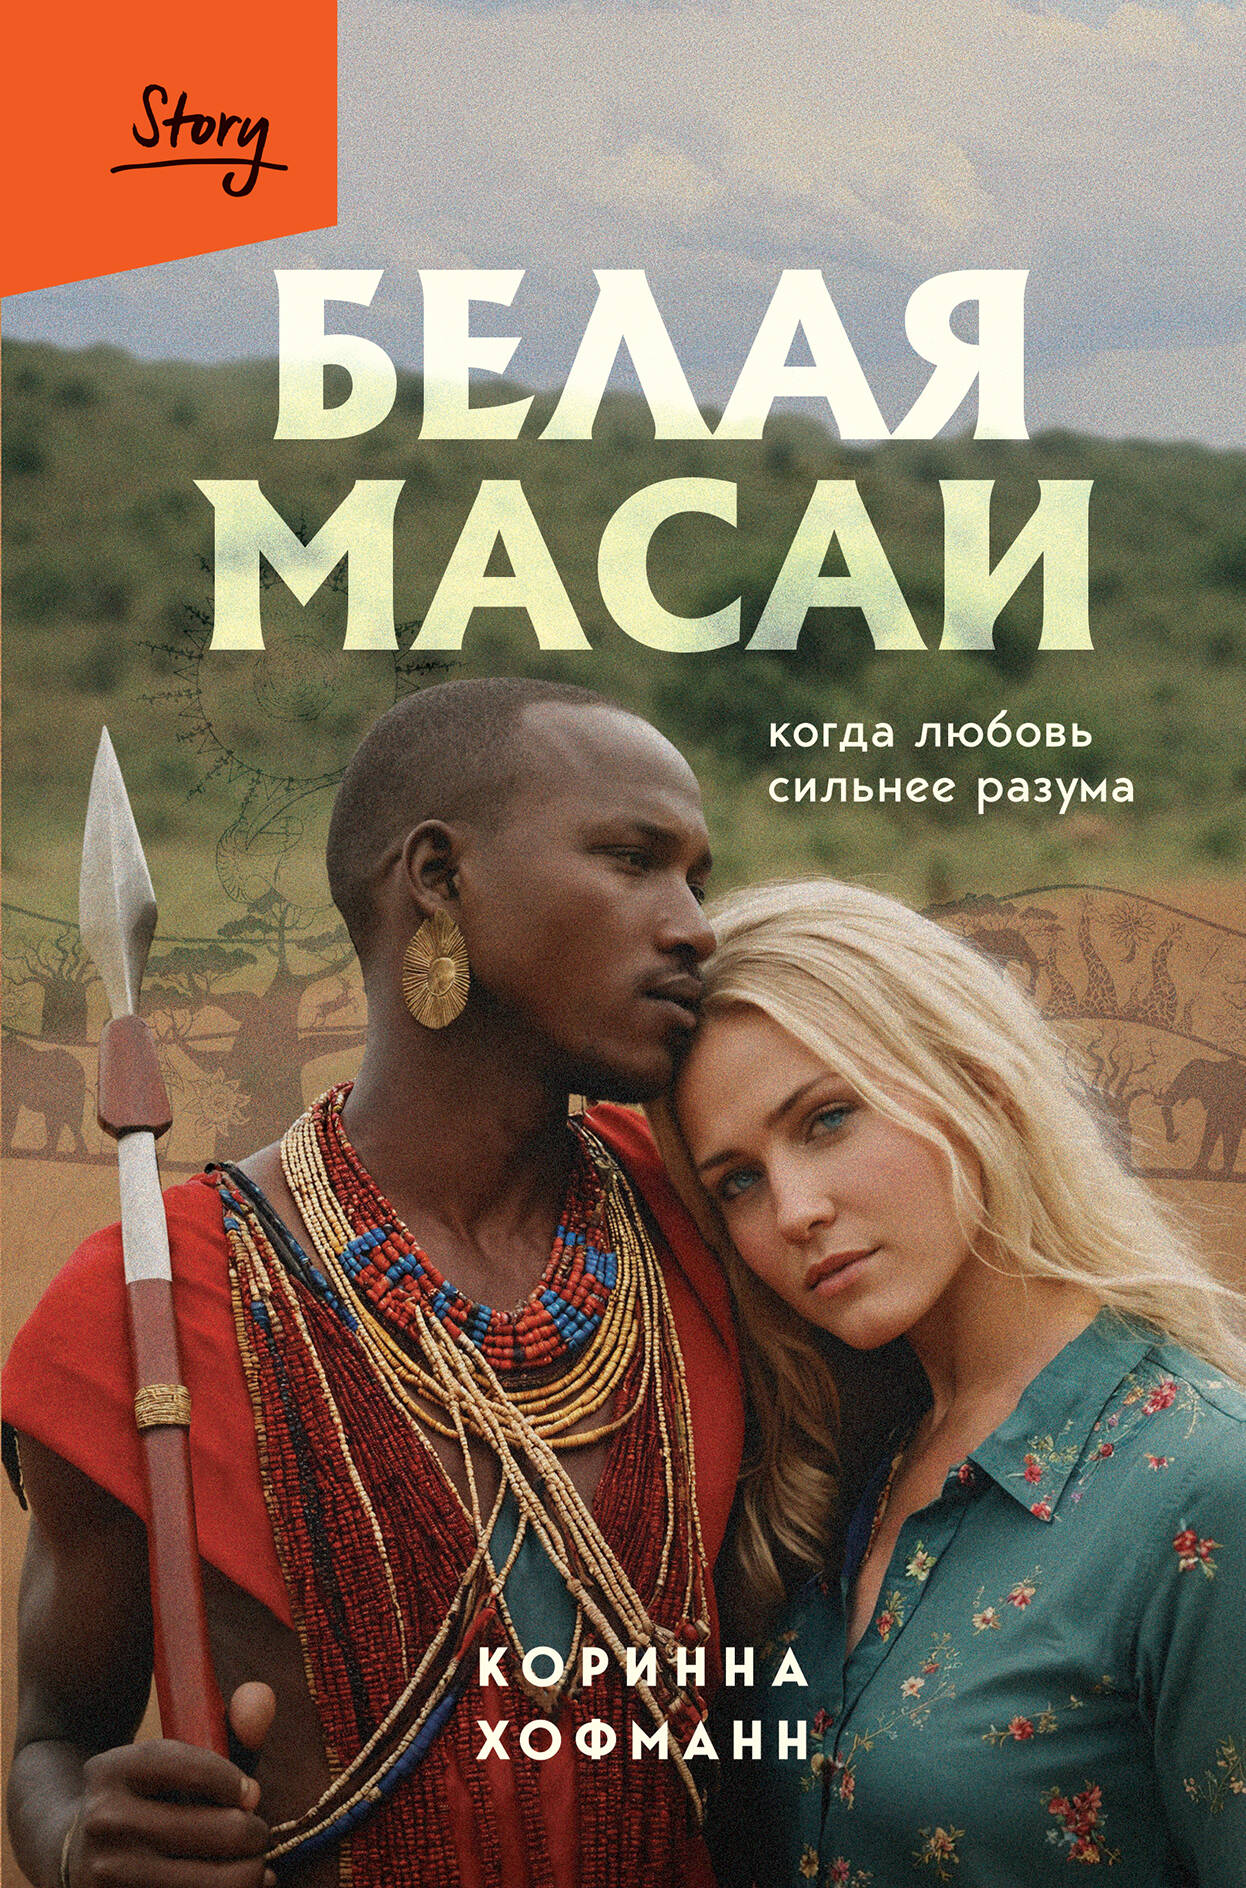 Хофманн Коринна Белая масаи